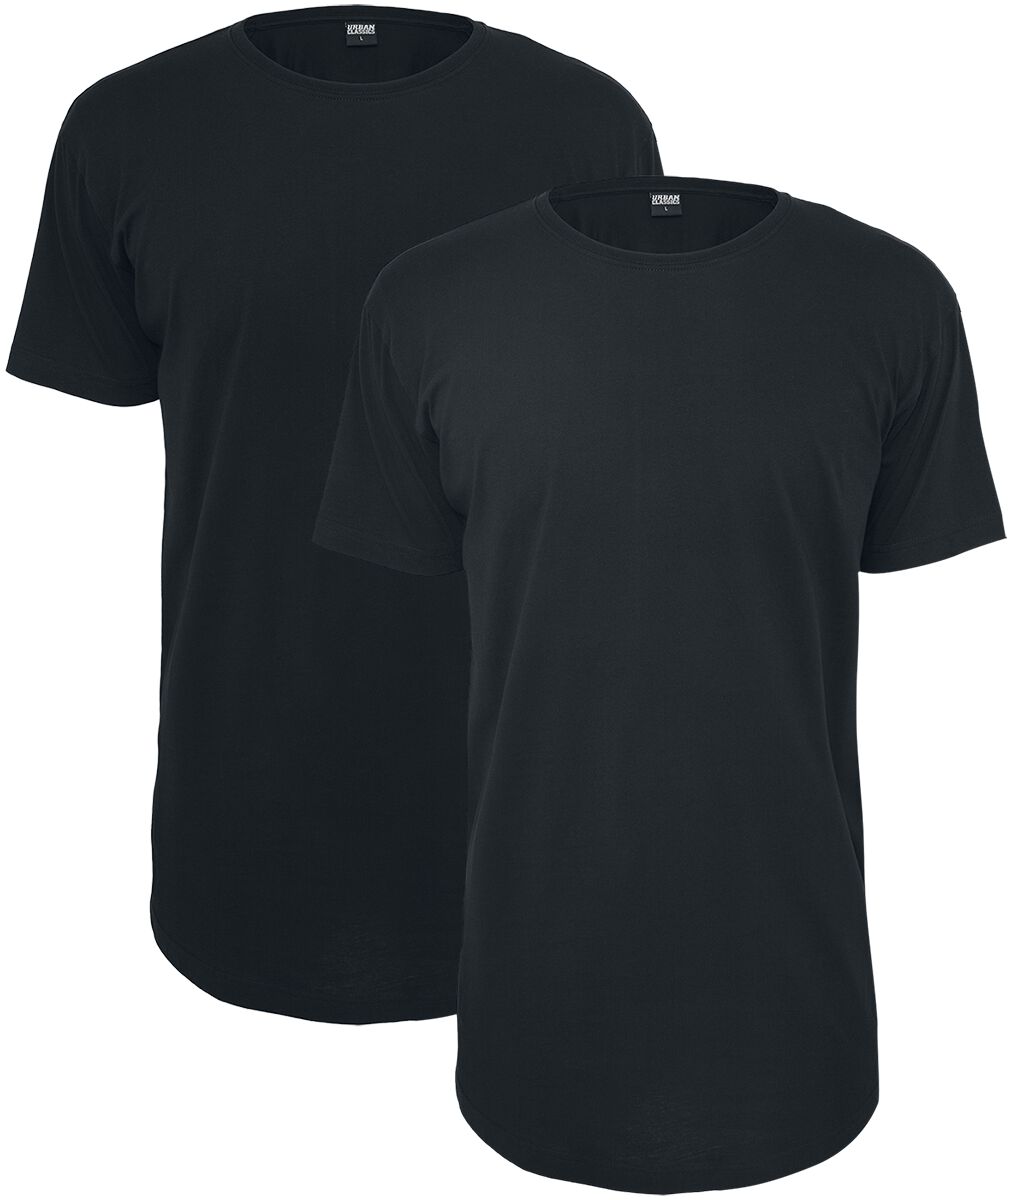 Urban Classics T-Shirt - Pre-Pack Shaped Long Tee 2-Pack - XS bis 5XL - für Männer - Größe L - schwarz